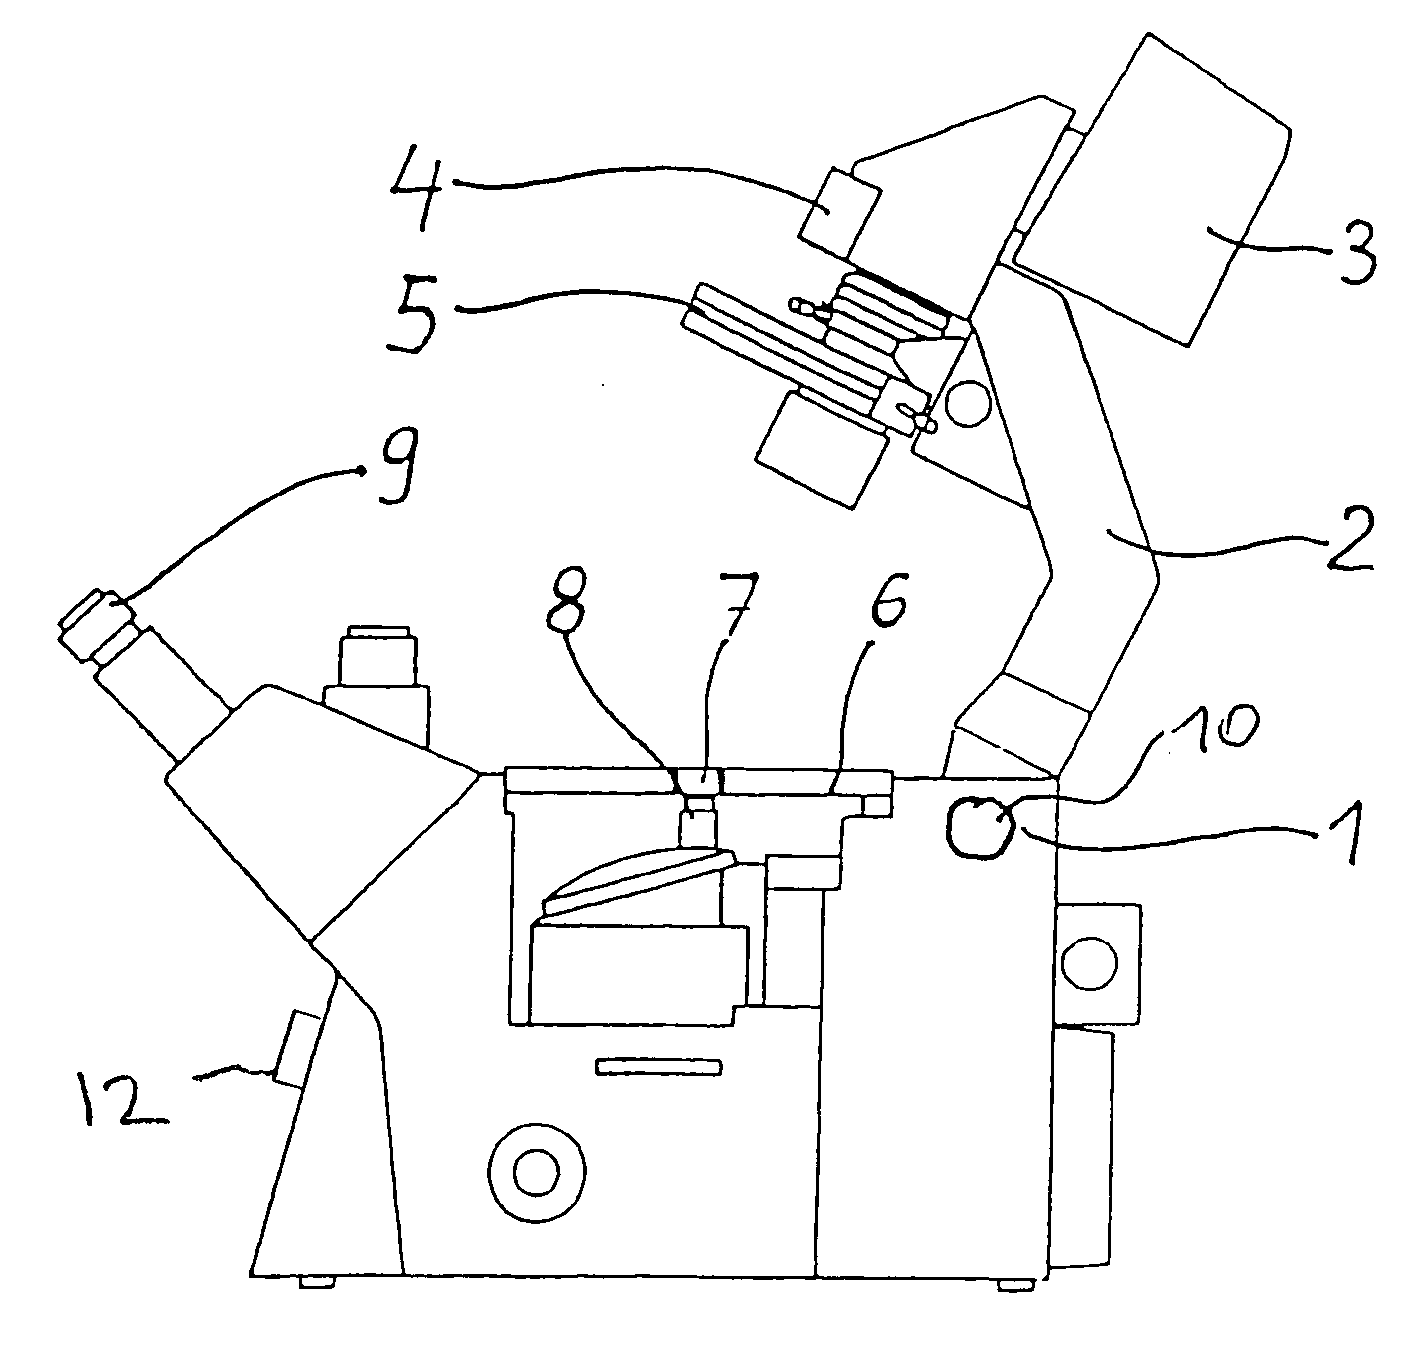 Arrangement for tilting an illumination carrier on an inverse light microscope